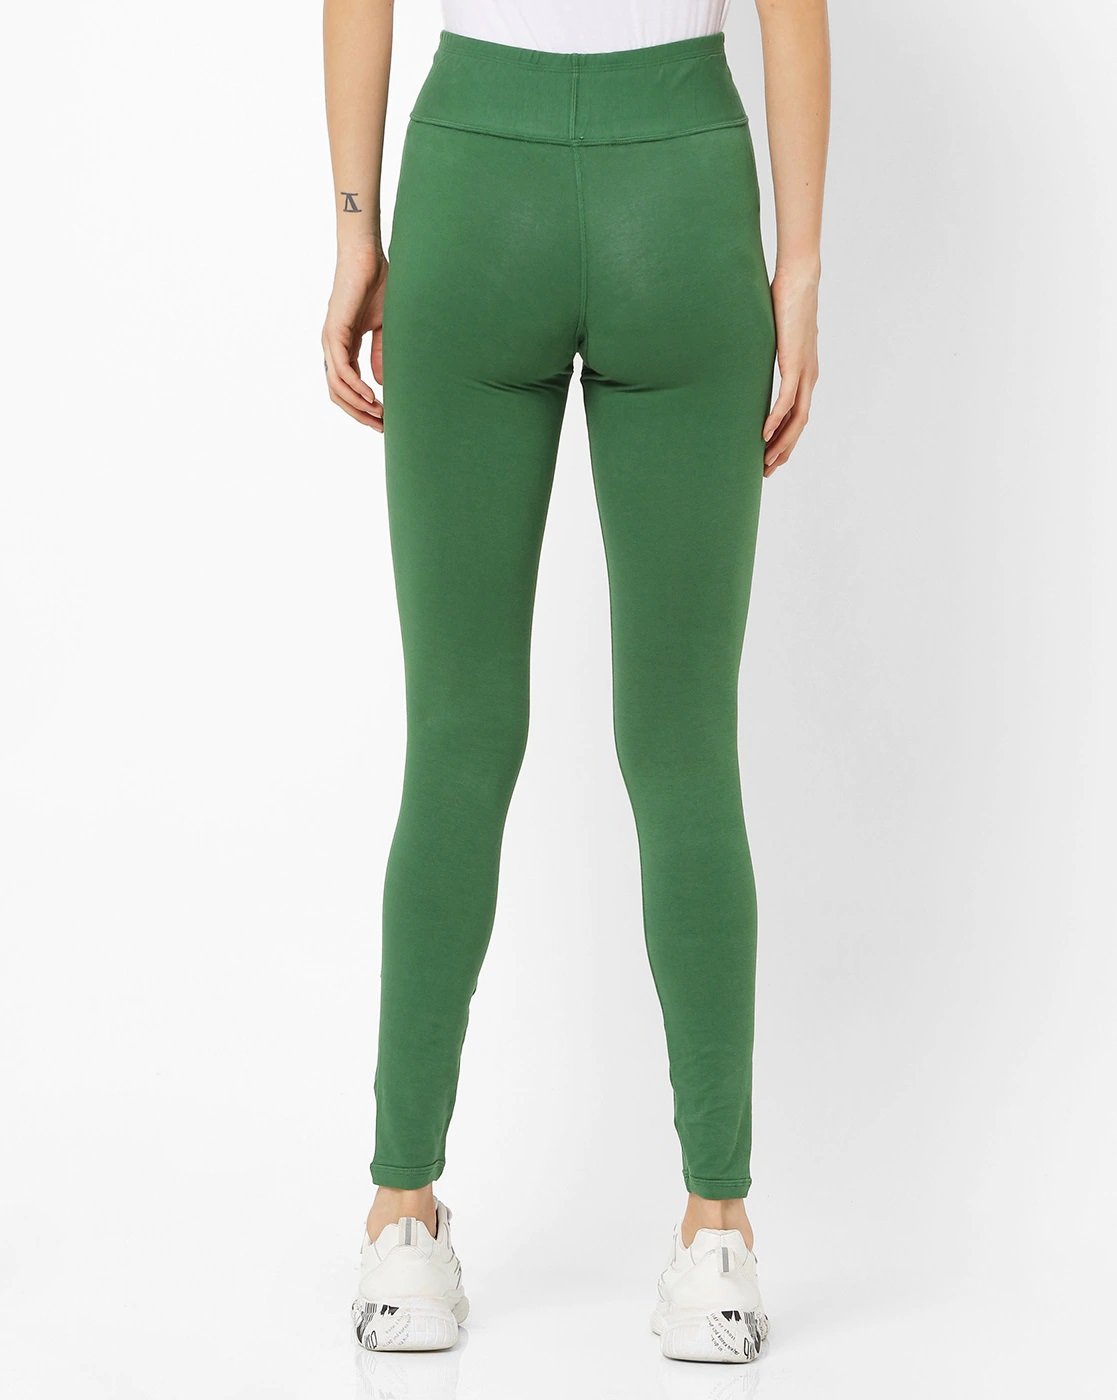 High Waist Yoga Pant Leggings for Women Green - Stilento